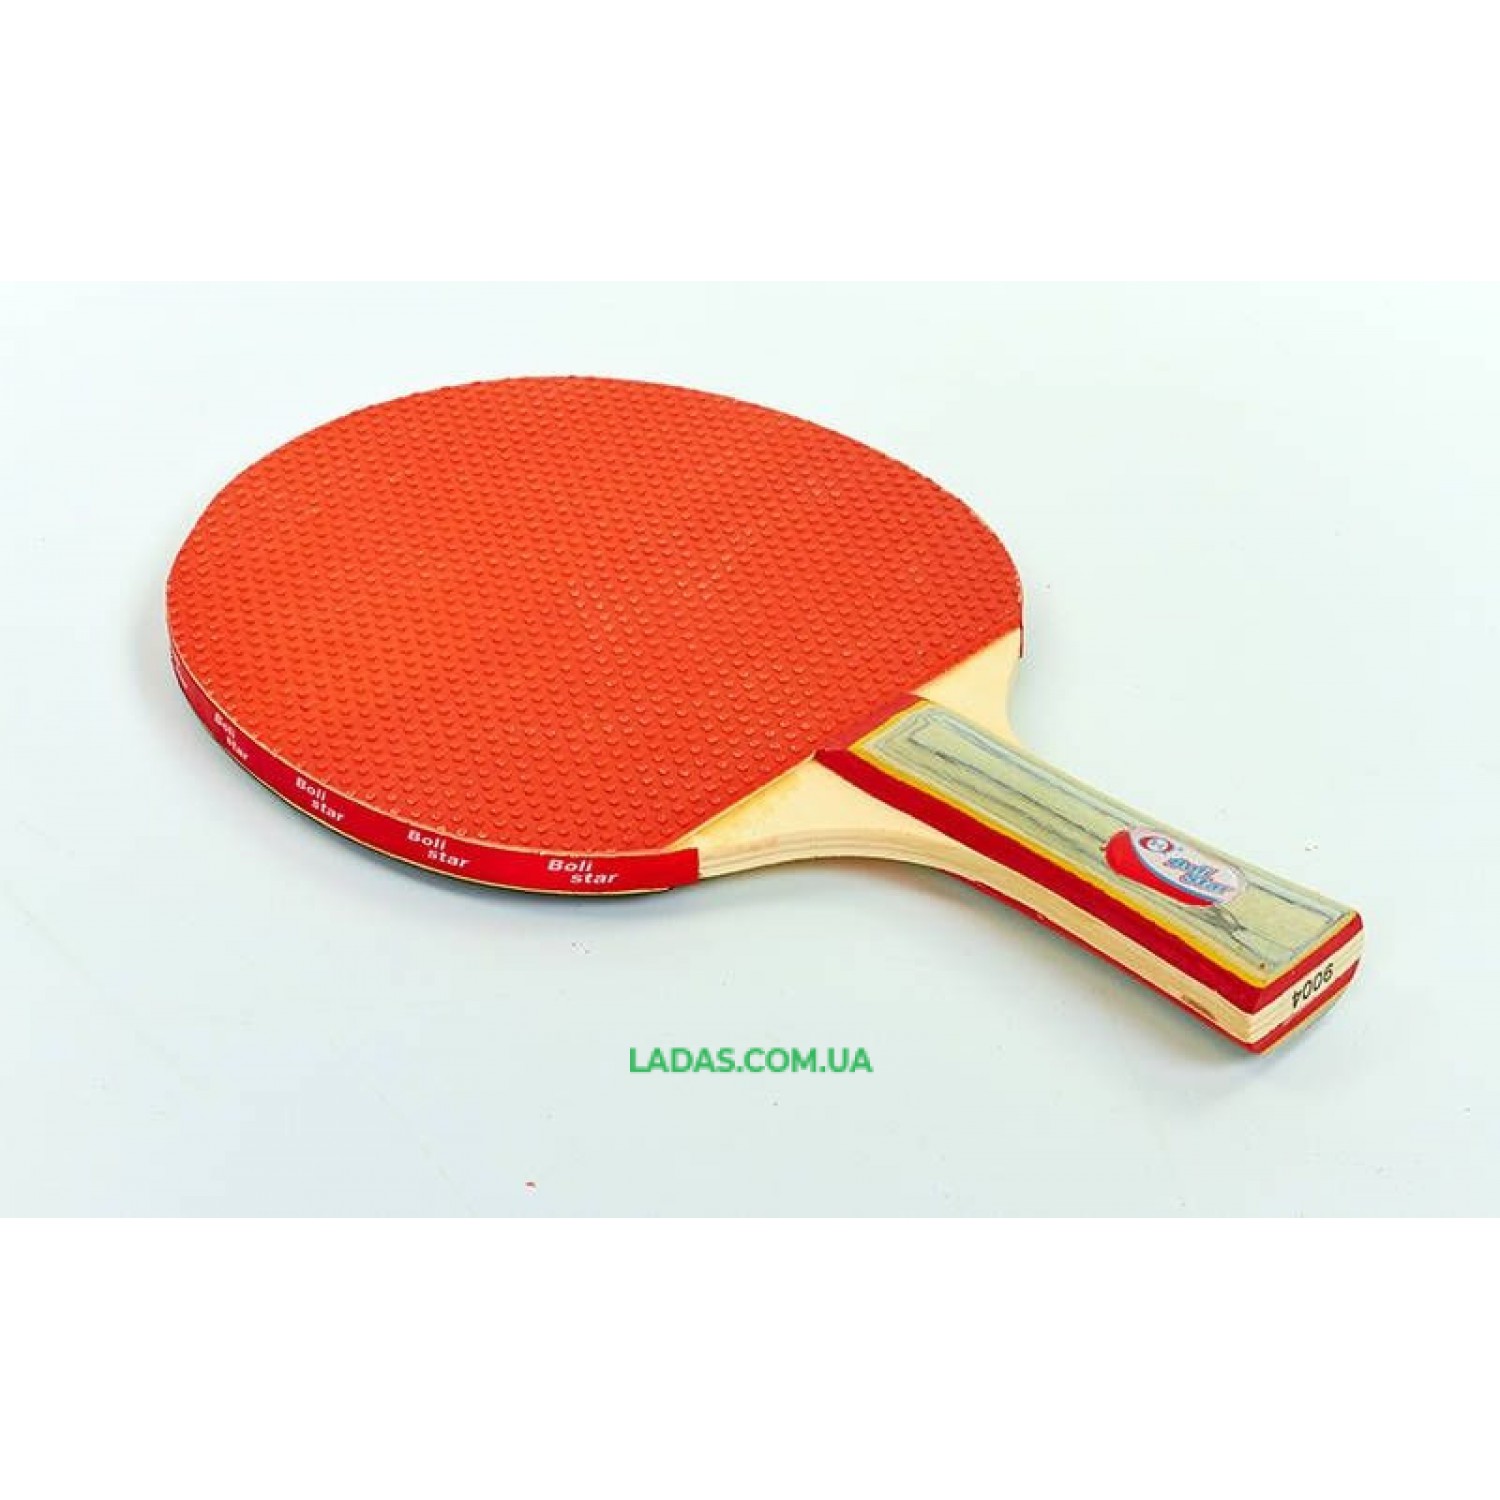 Набор для наст. тенниса Boli Star (2рак+3шар) MT-9004 (древесина, резина, пластик)*